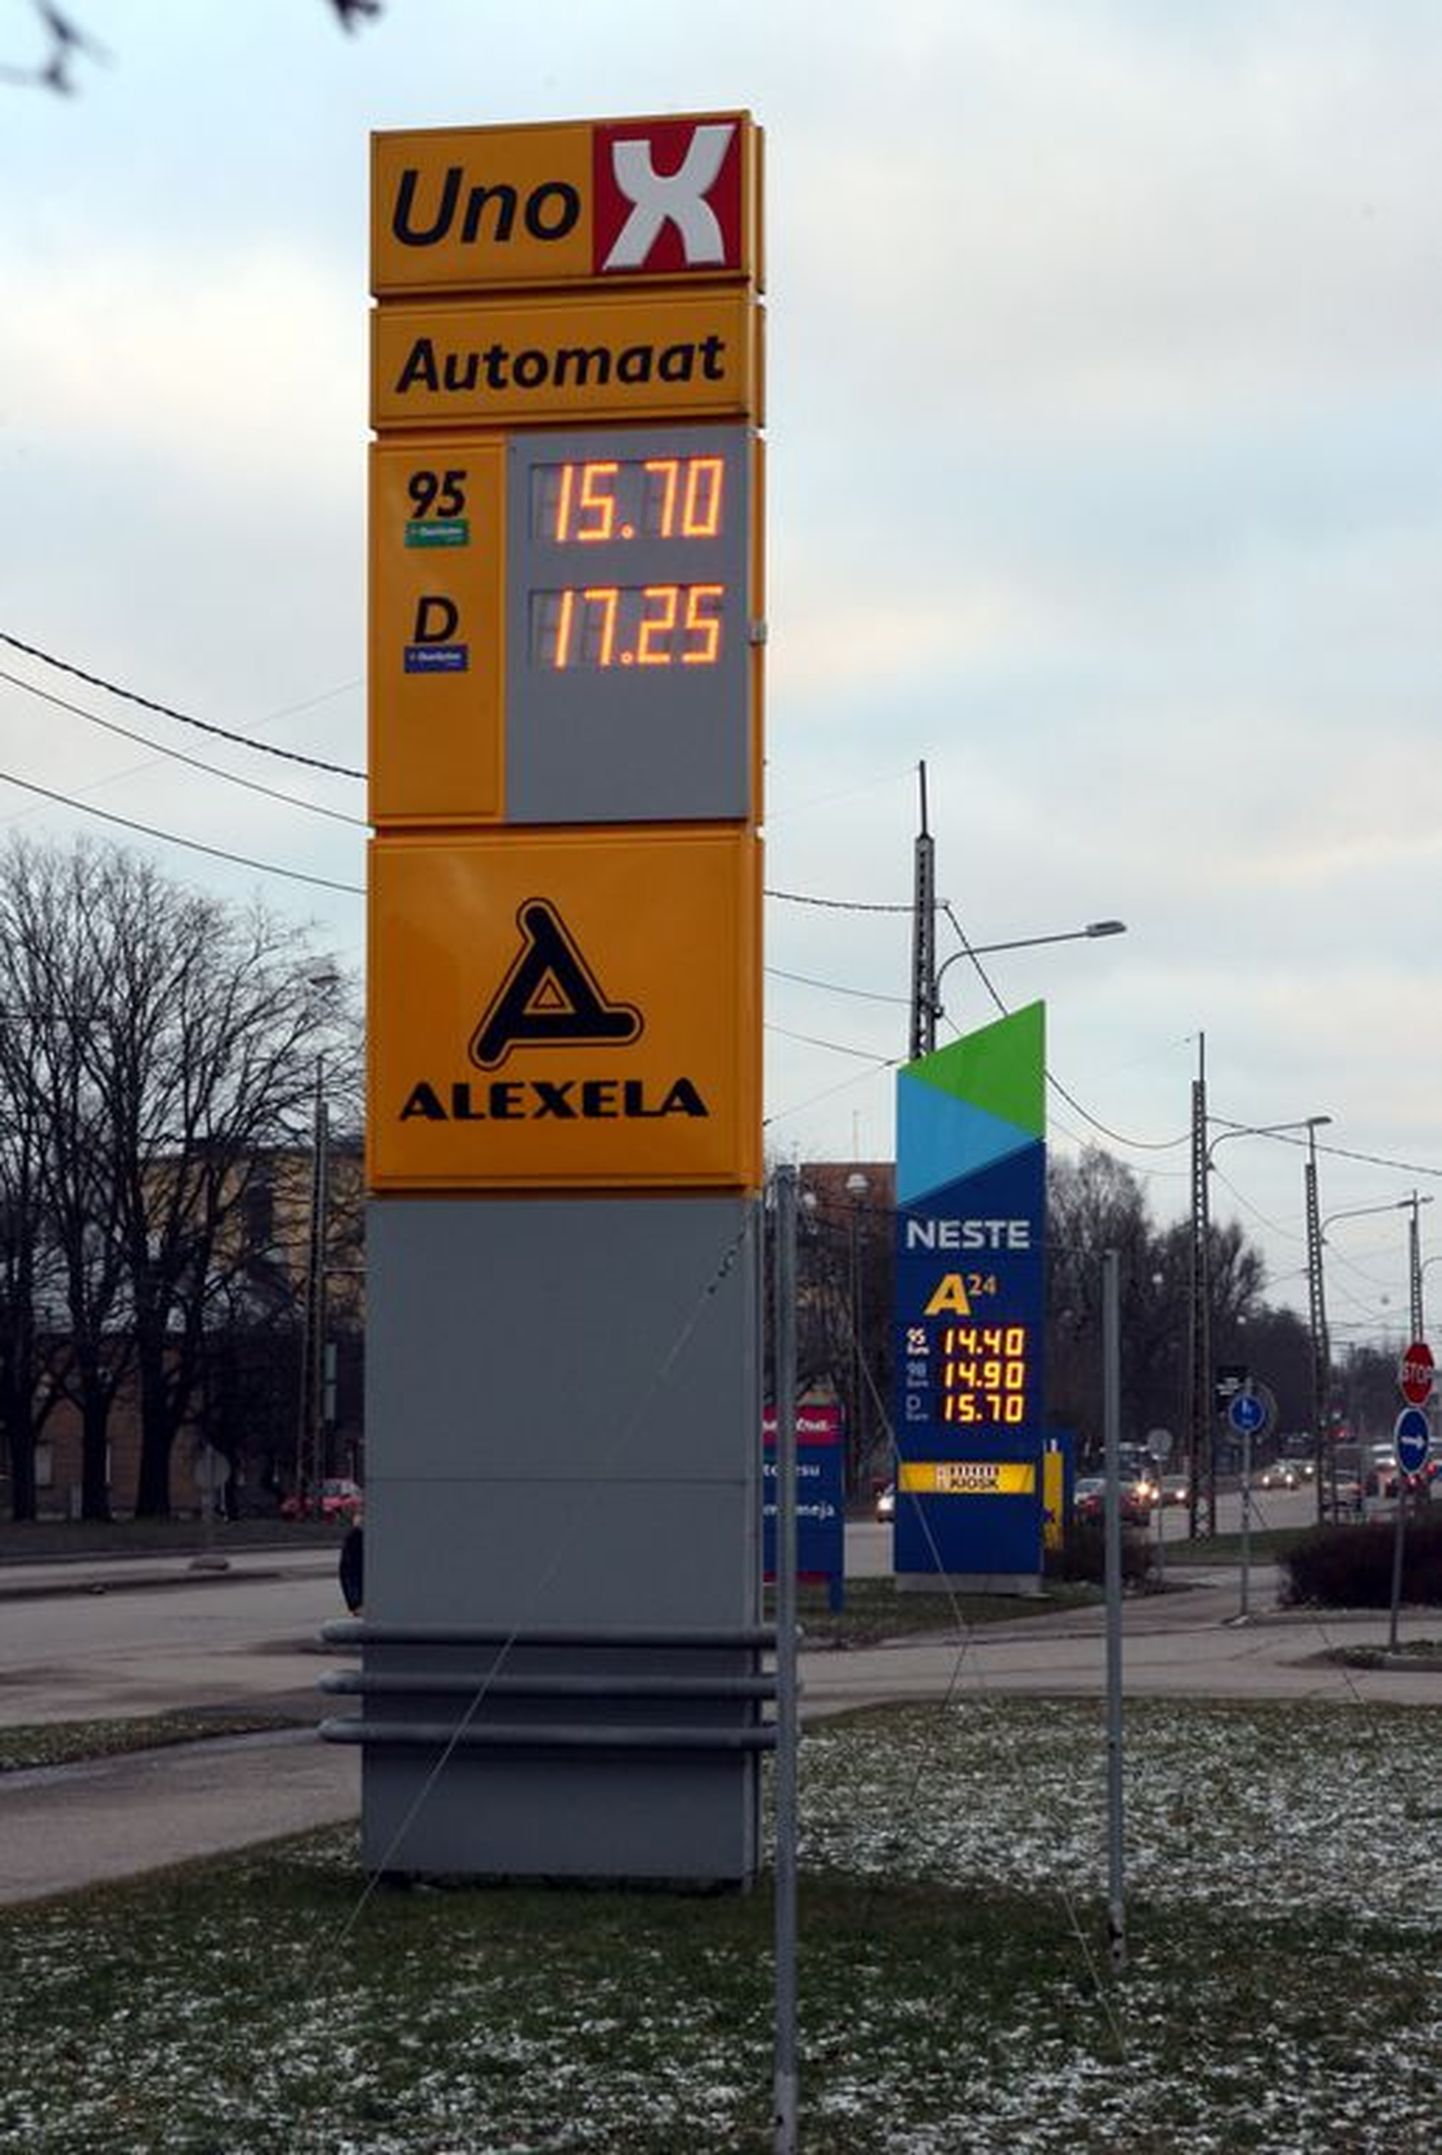 Suure osa aasta alguse inflatsioonist andsid kallinenud mootorikütused. Pildil hinnad Uno X ja Neste tanklates 2. jaanuaril 2008.   .